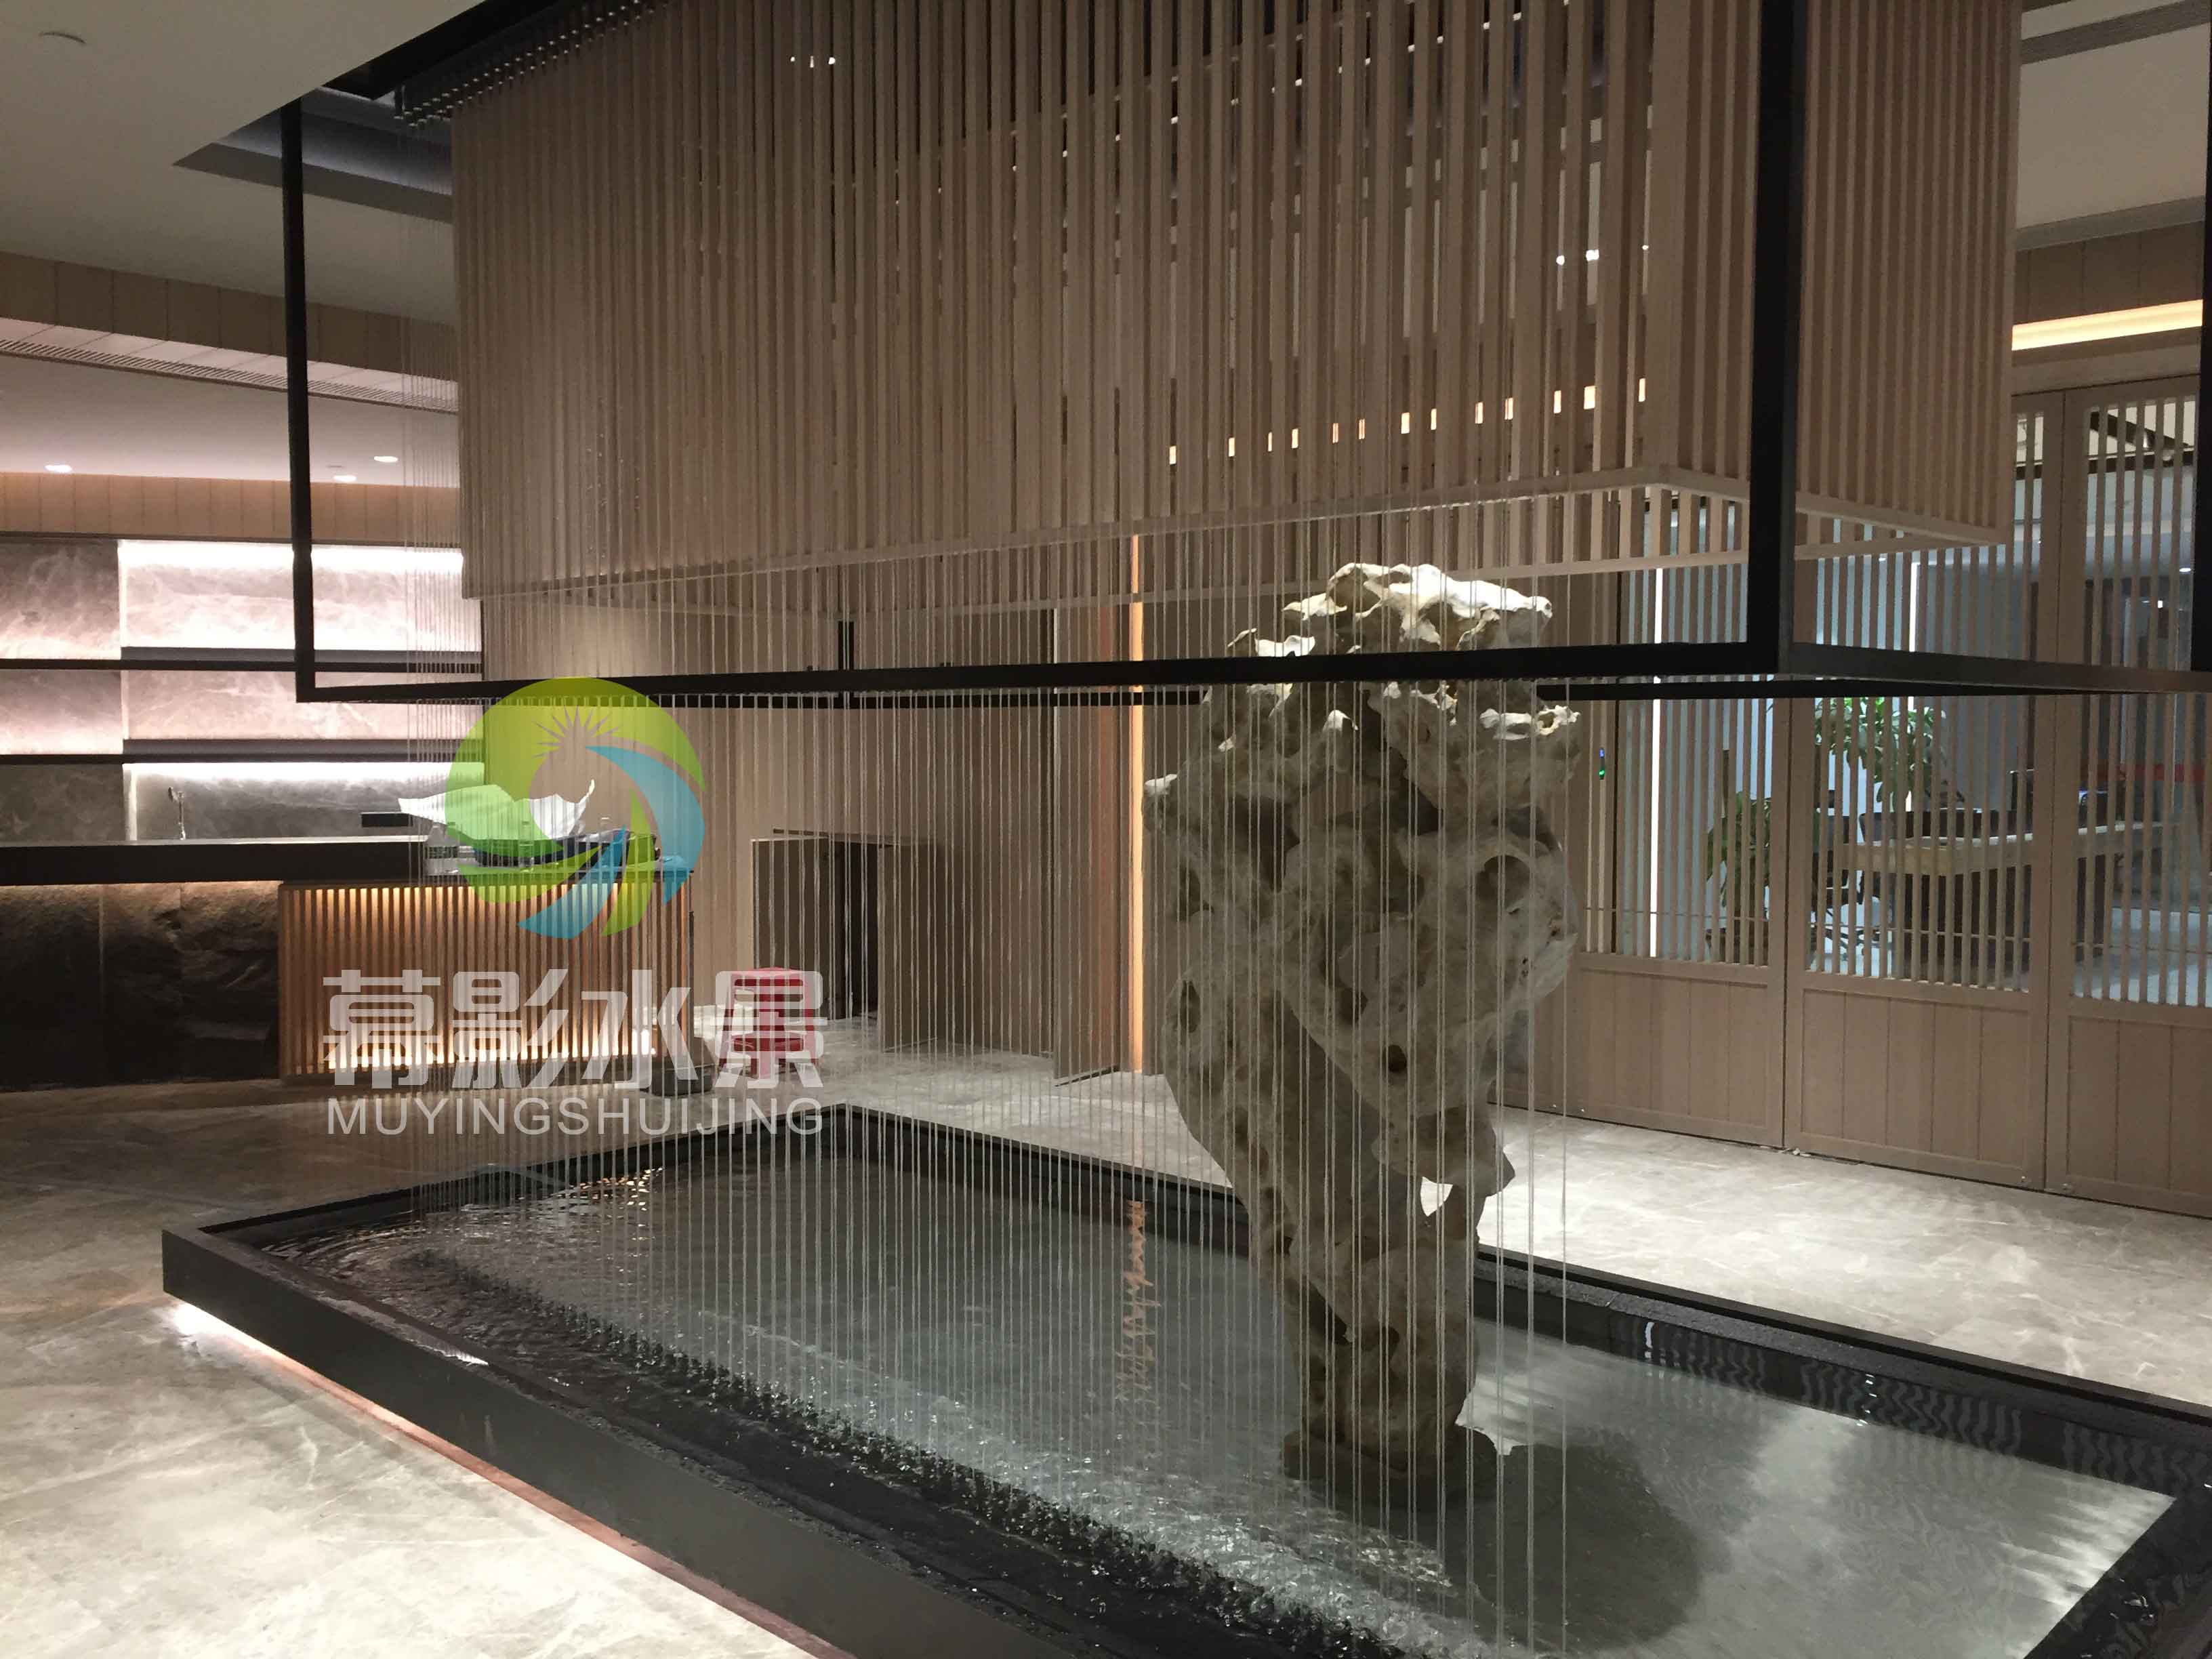 光纤水帘在酒店中庭中央位置,水景设计幕影水景全程参与,简约大方的